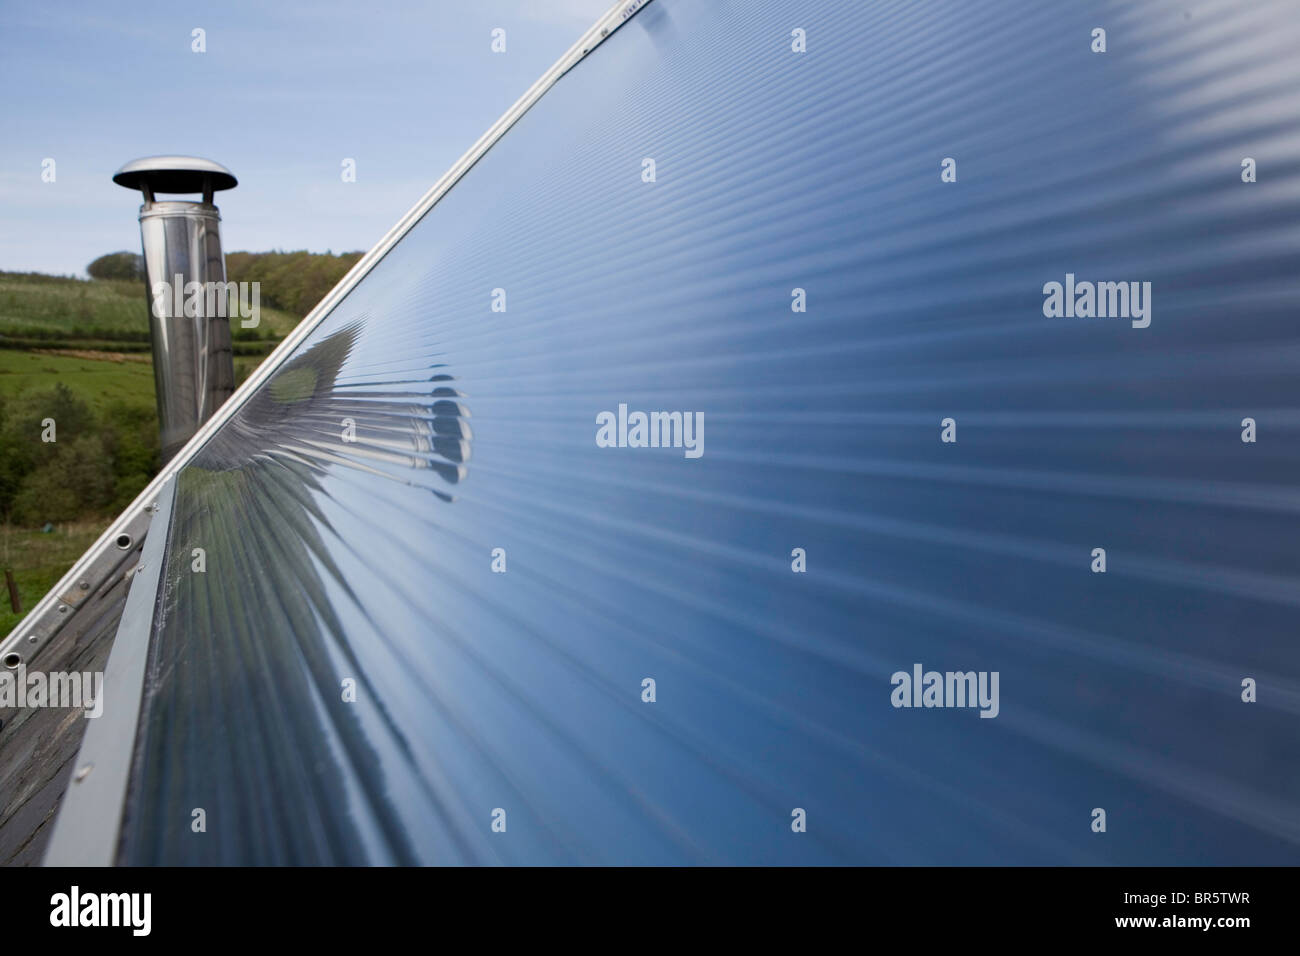 Un panneau solaire thermique sur le toit. Les chauffe-eau solaires utilisent la chaleur du soleil pour travailler aux côtés de chauffe-eau conventionnels. Banque D'Images